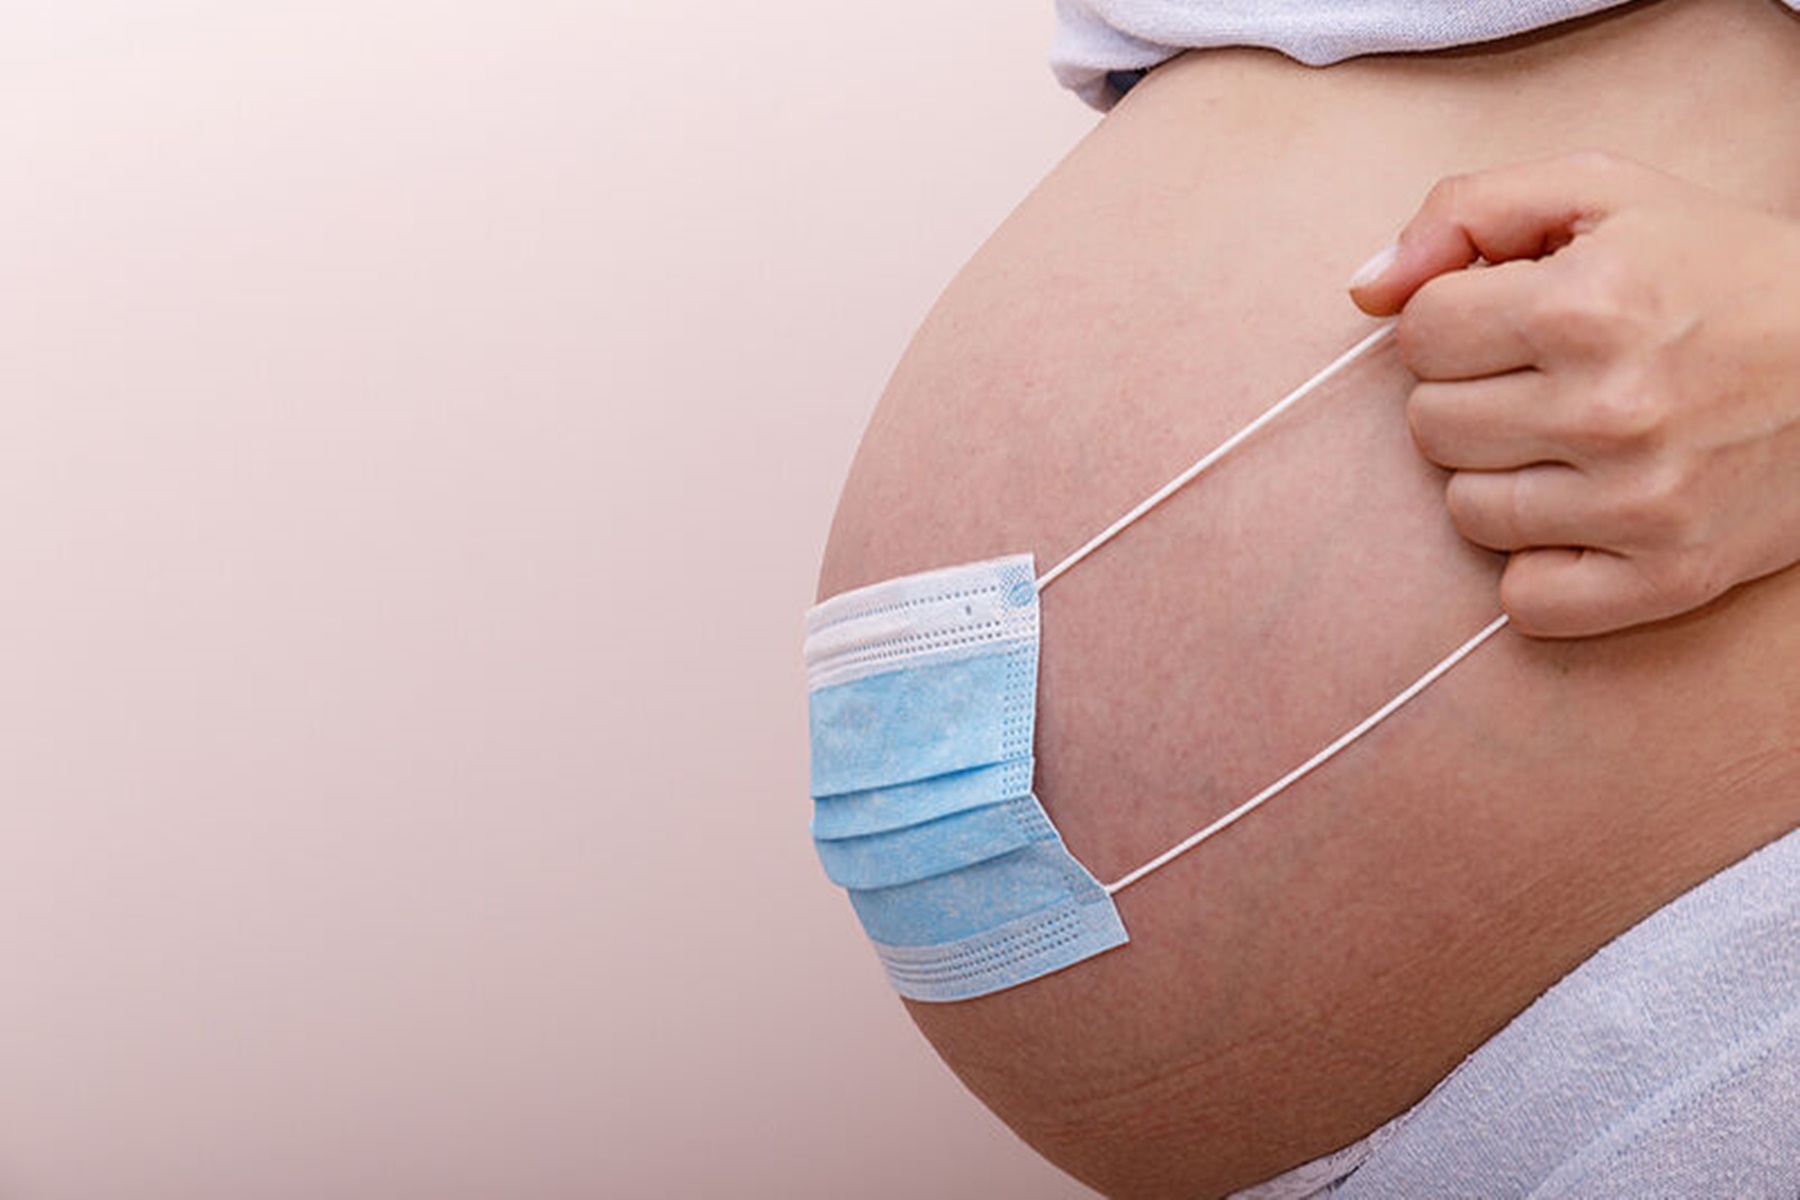 Έγκυες και θηλάζουσες : Όσες έχουν κάνει το εμβόλιο είναι ασφαλείς απέναντι στον κορωνοϊό